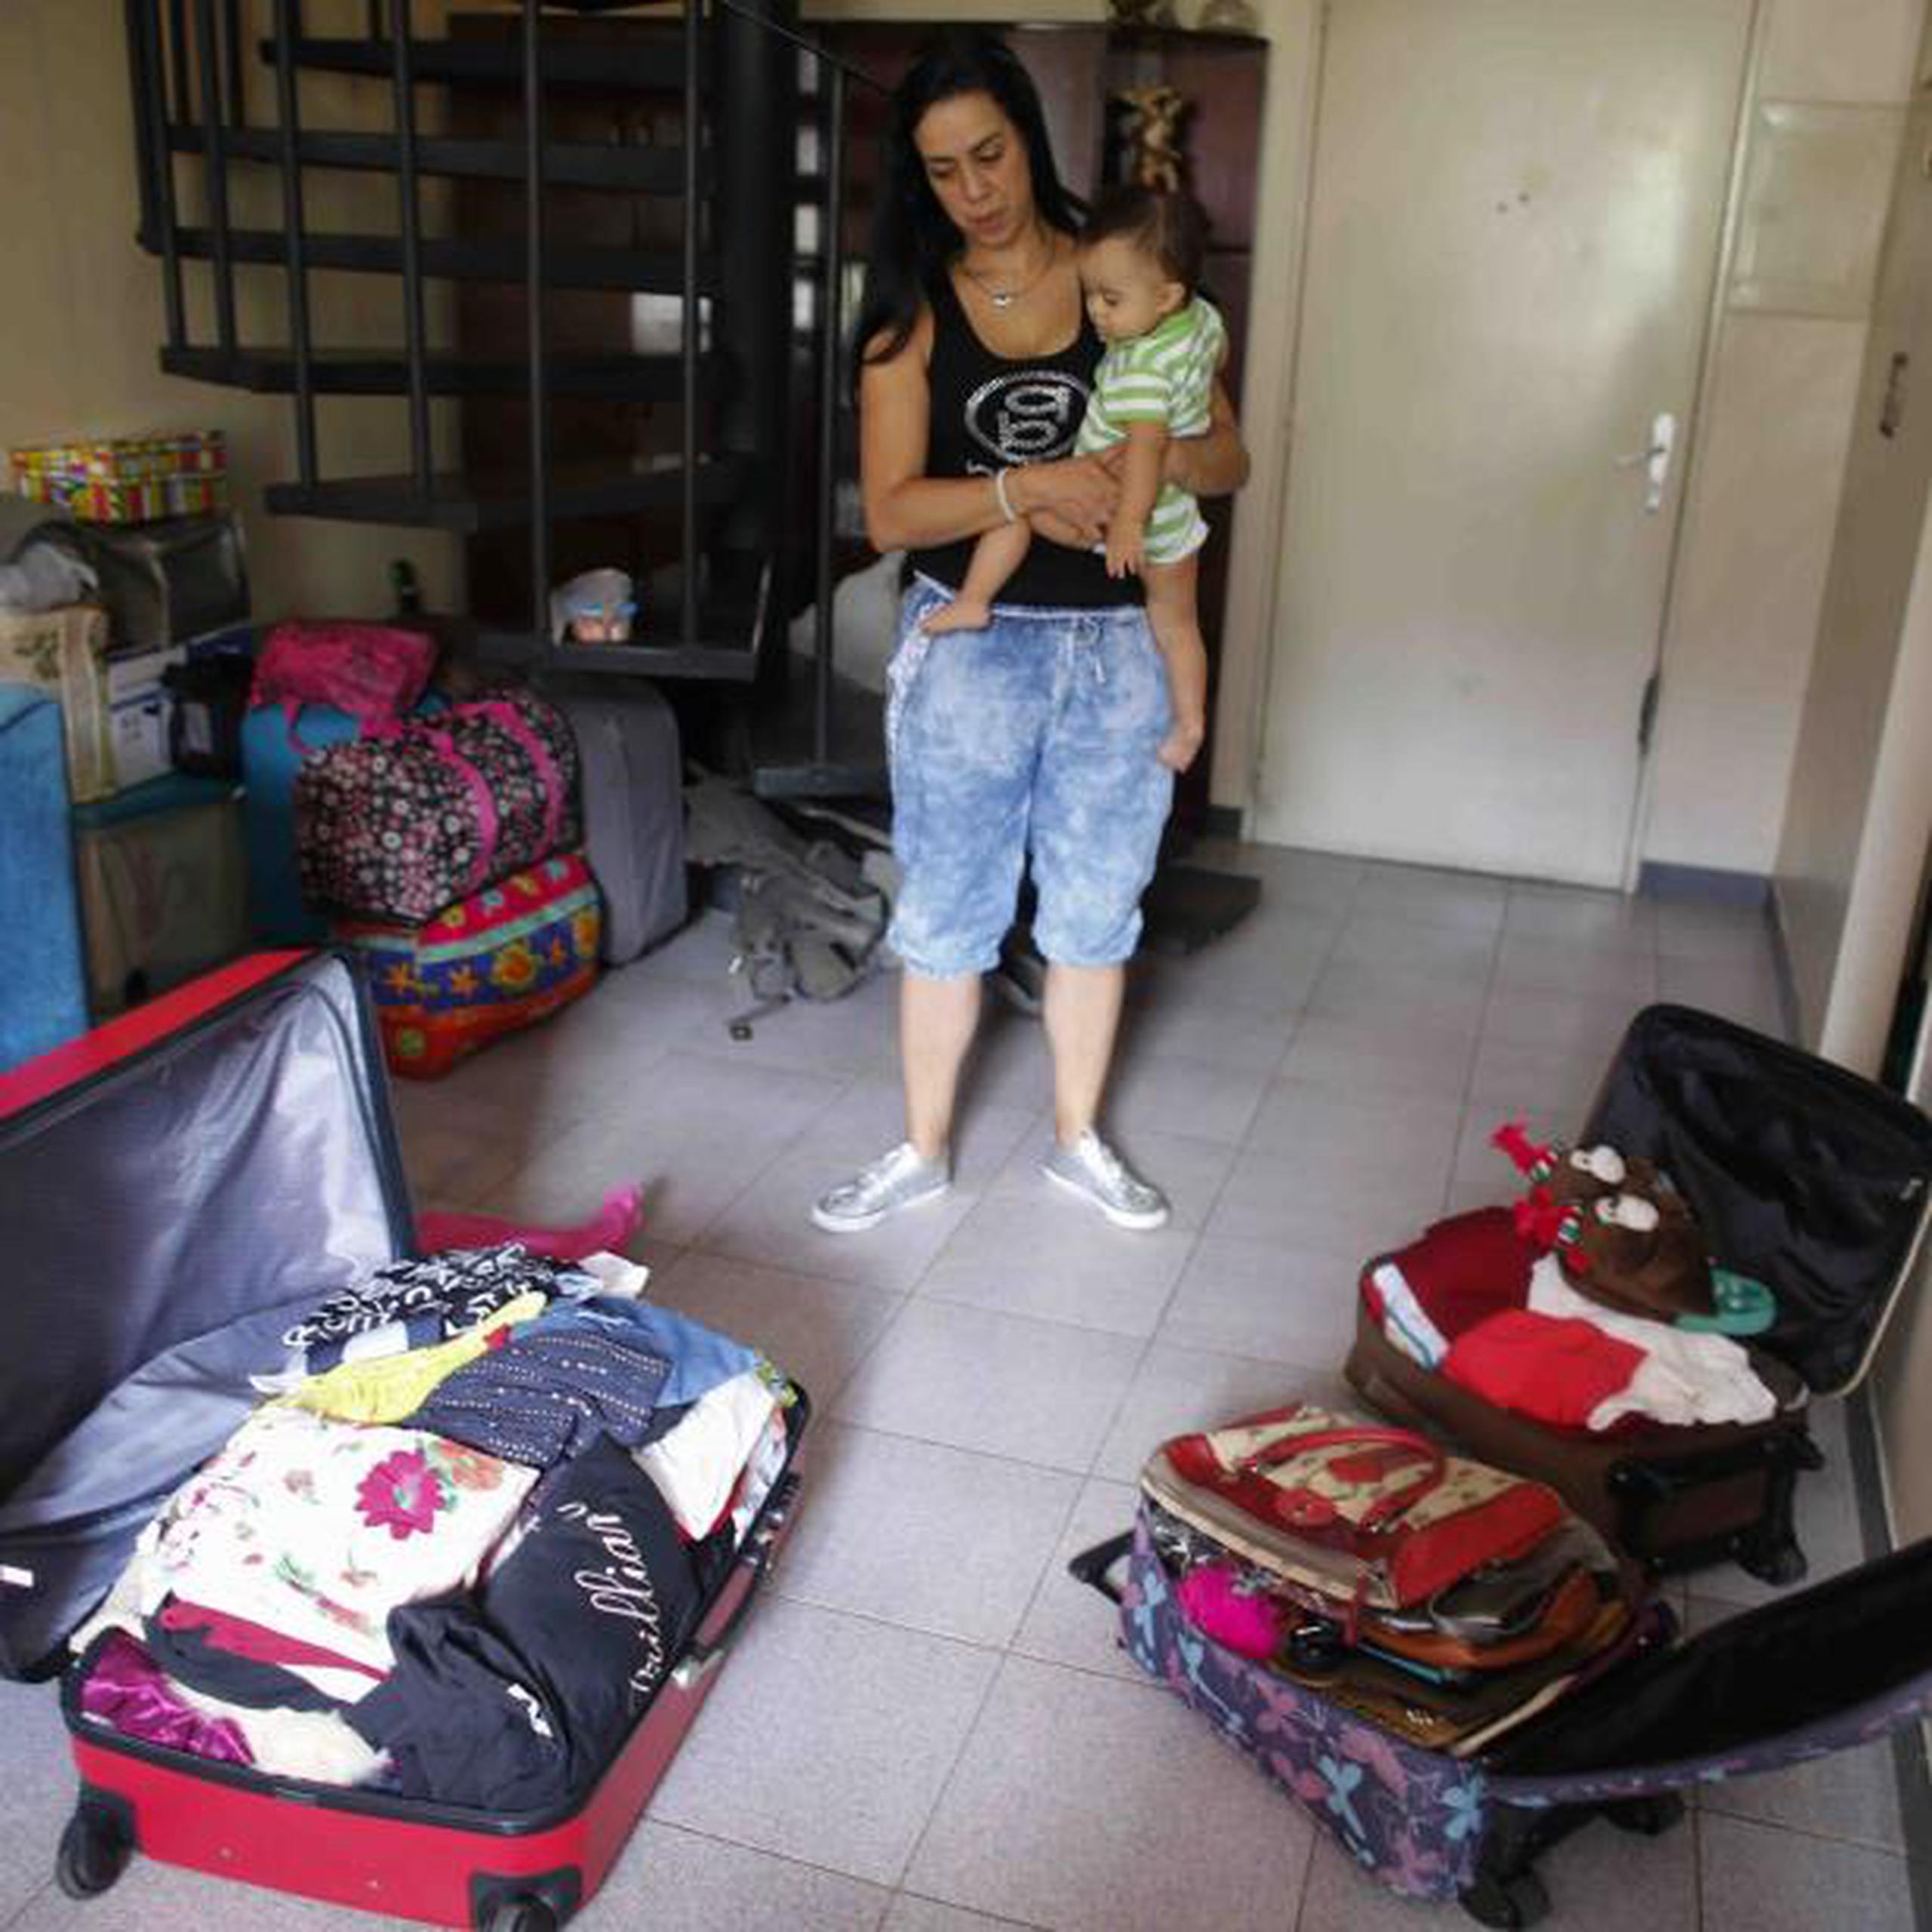 Yenika Calderón, de 41 años, espera vender todas las cosas empacadas en sus maletas para poder irse a España con su hijo Gael, de 10 meses y empezar una nueva vida tras la devastación en el suyo. (AP/Ariana Cubillos)